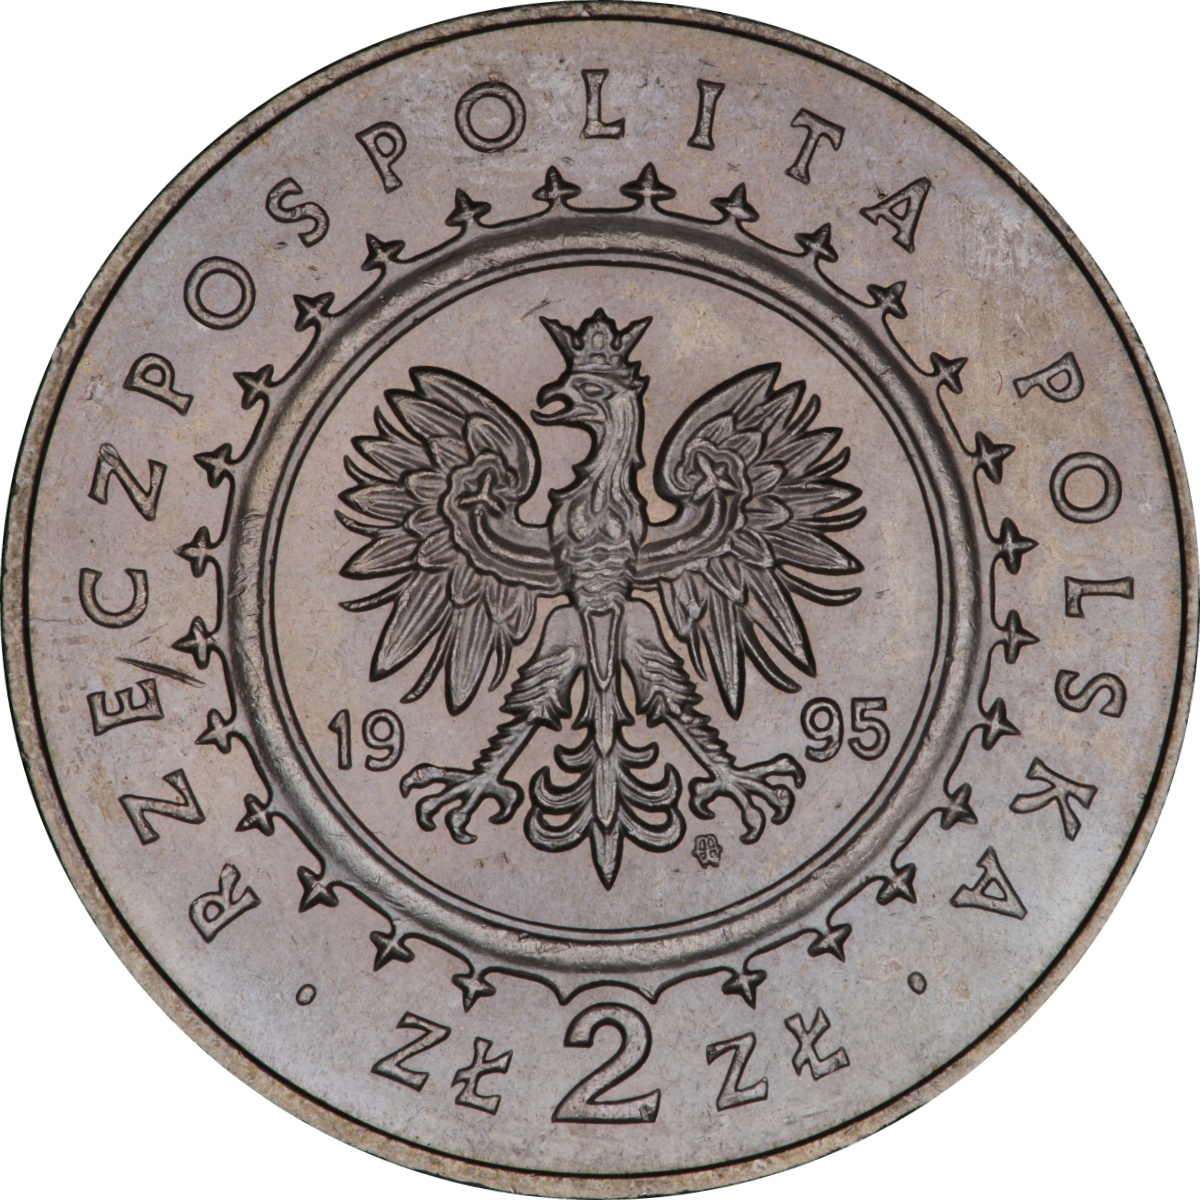 2zl-palac-krolewski-w-lazienkach-awers-monety